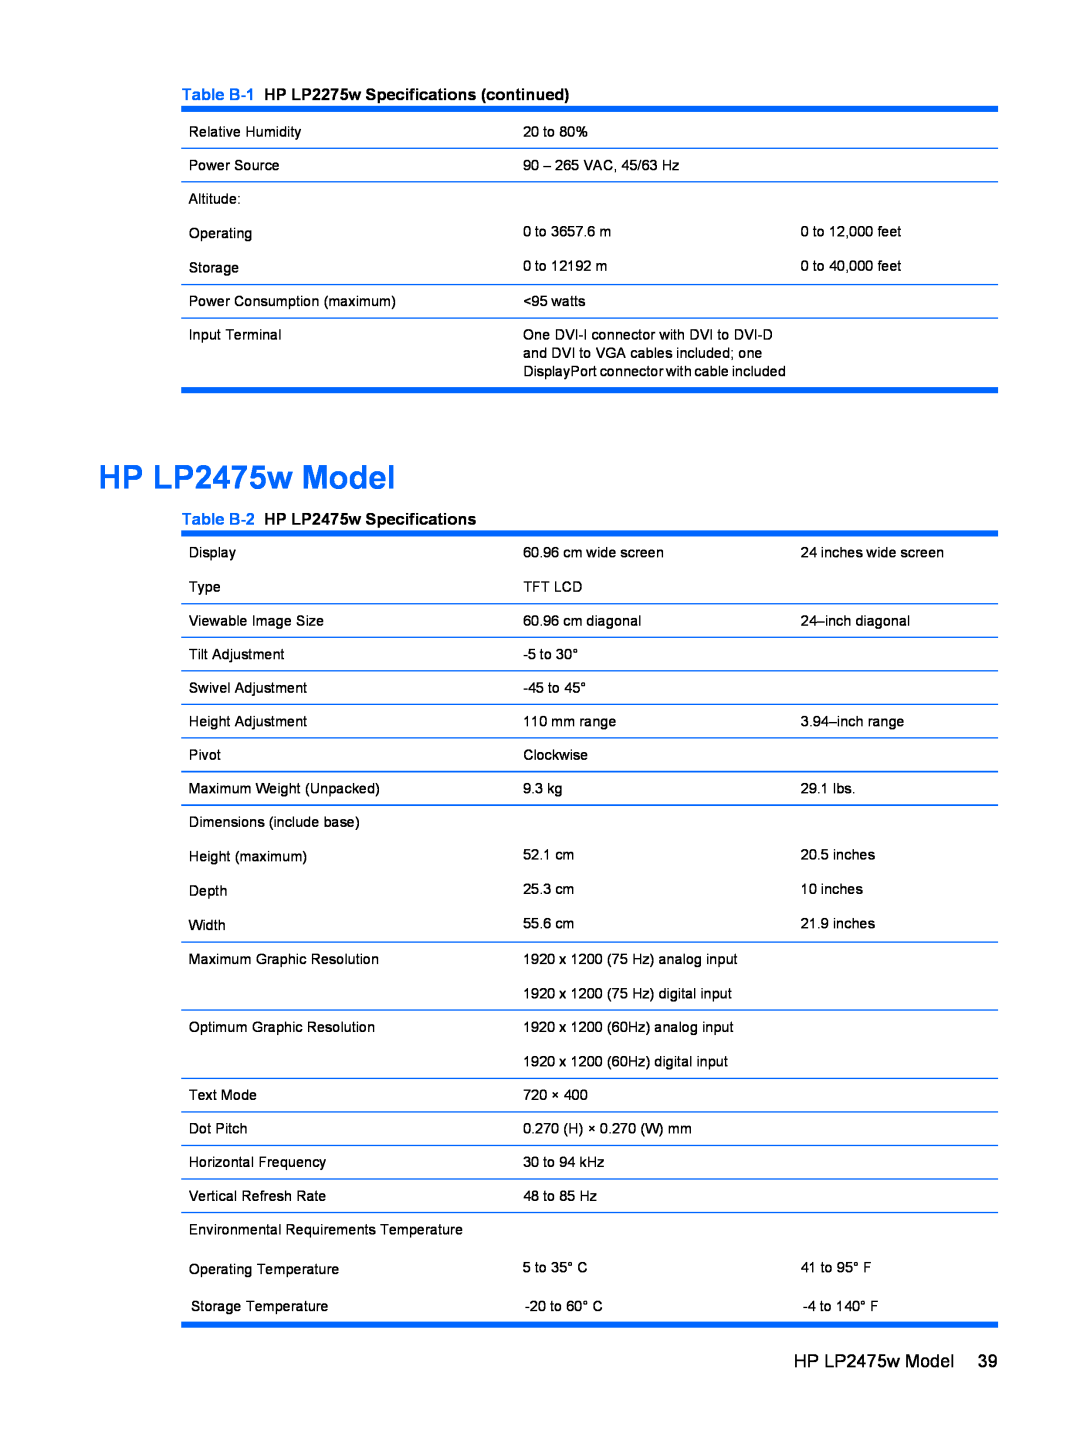 HP manual HP LP2475w Model, Table B-1 HP LP2275w Specifications continued, Table B-2 HP LP2475w Specifications 